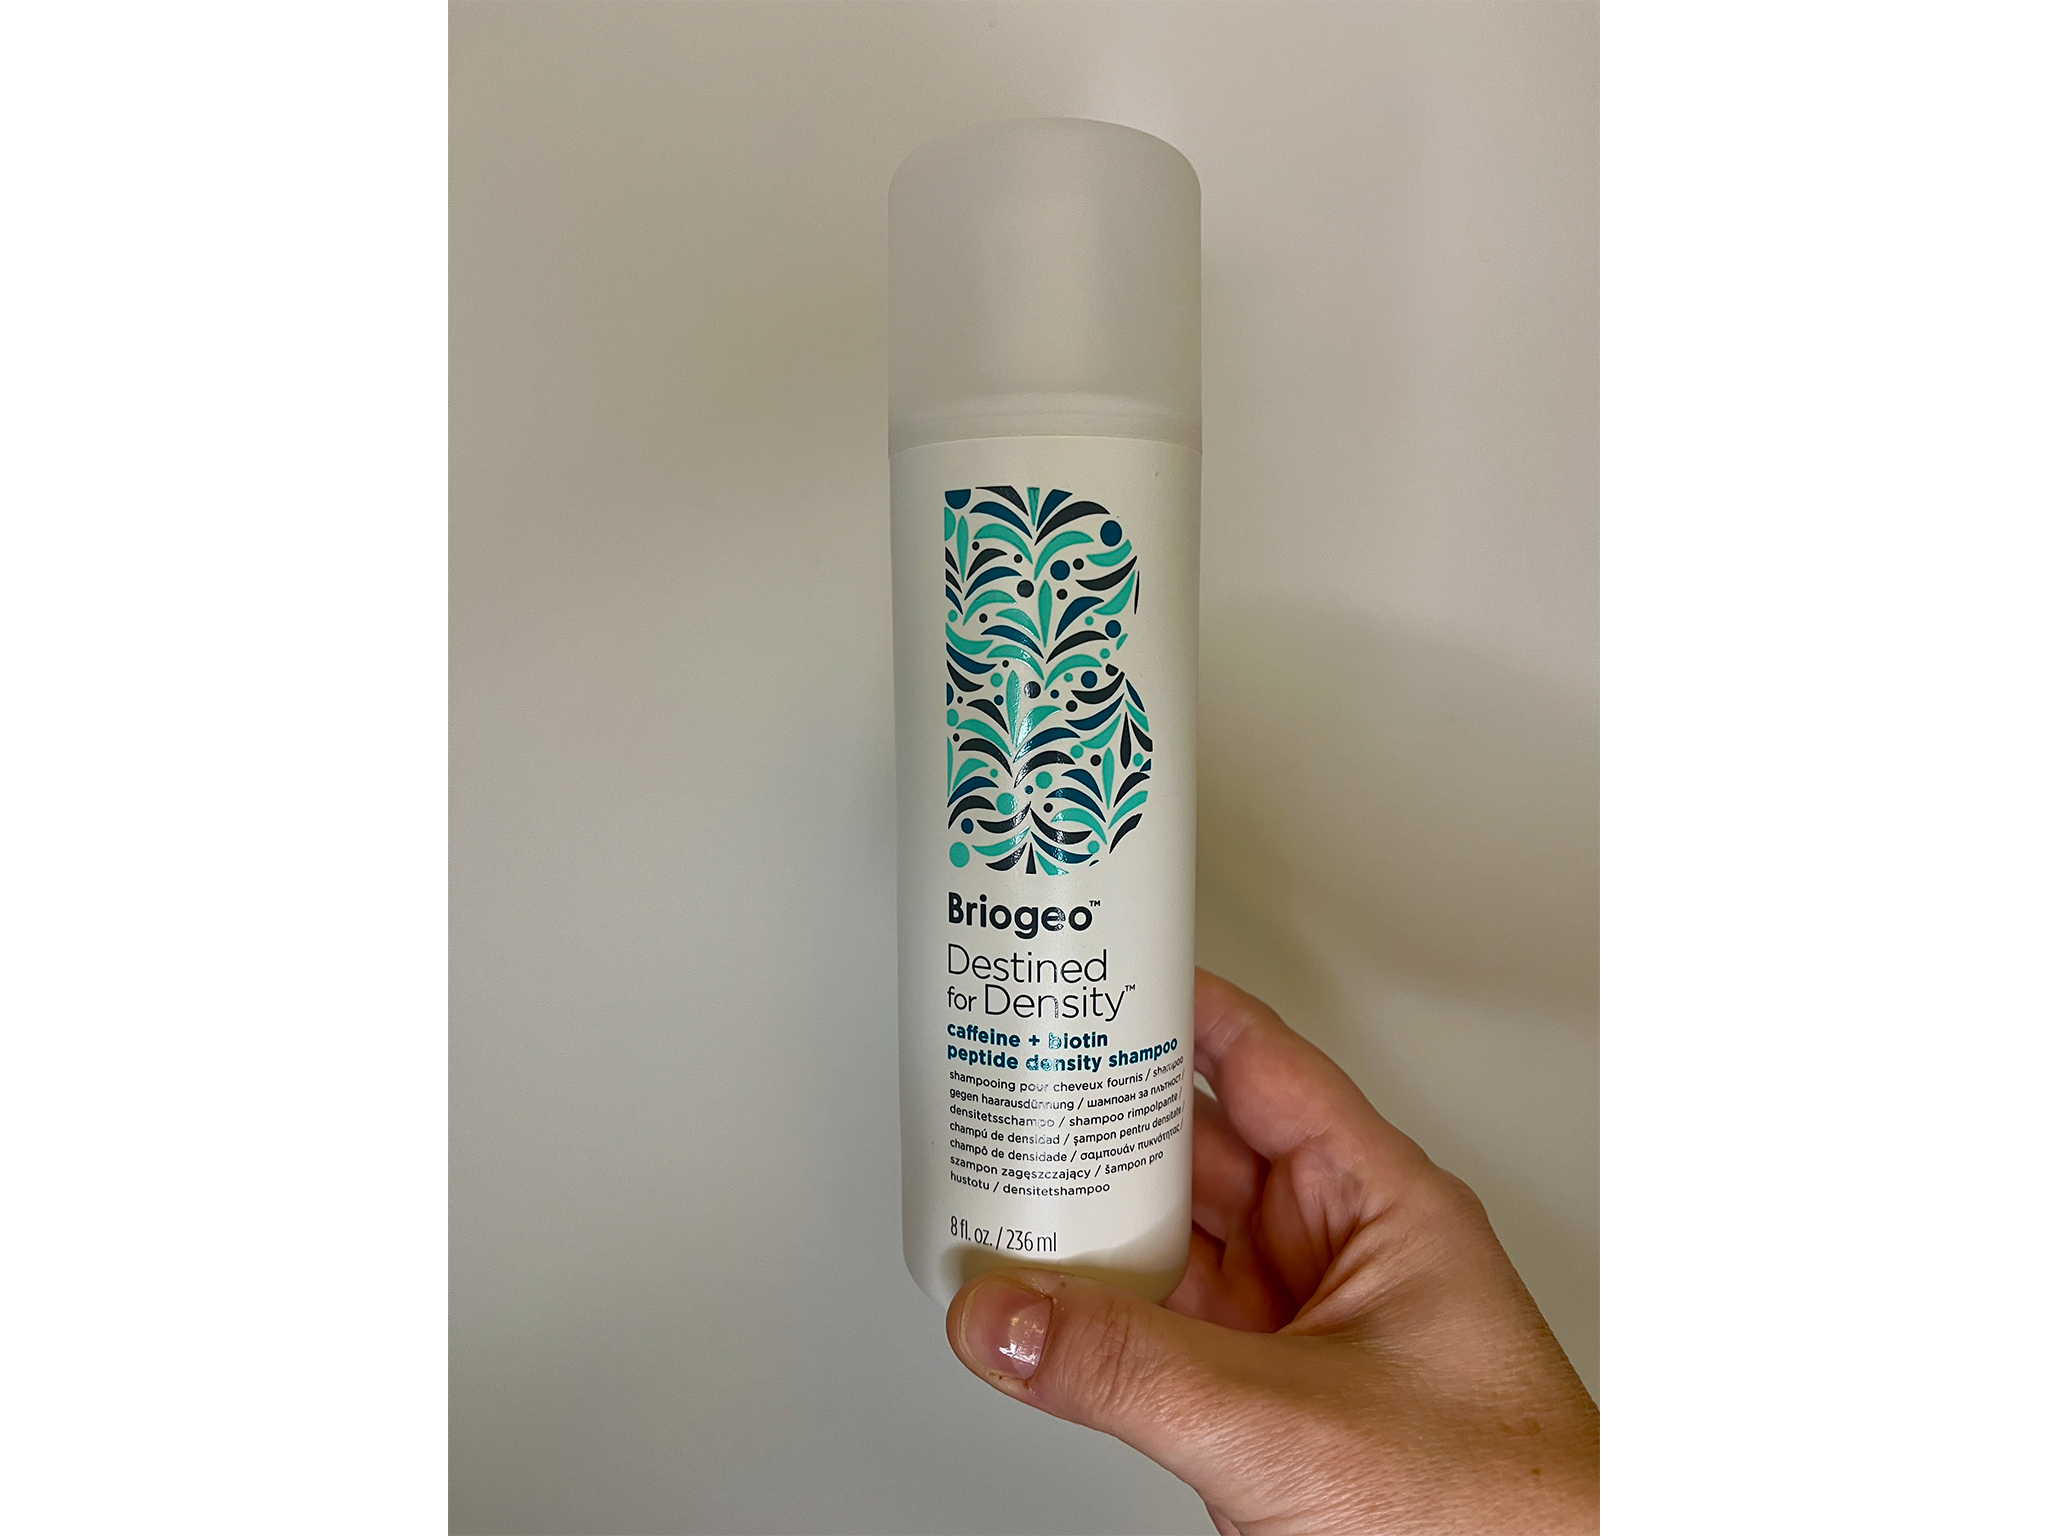 Briogeo destined for density shampoo